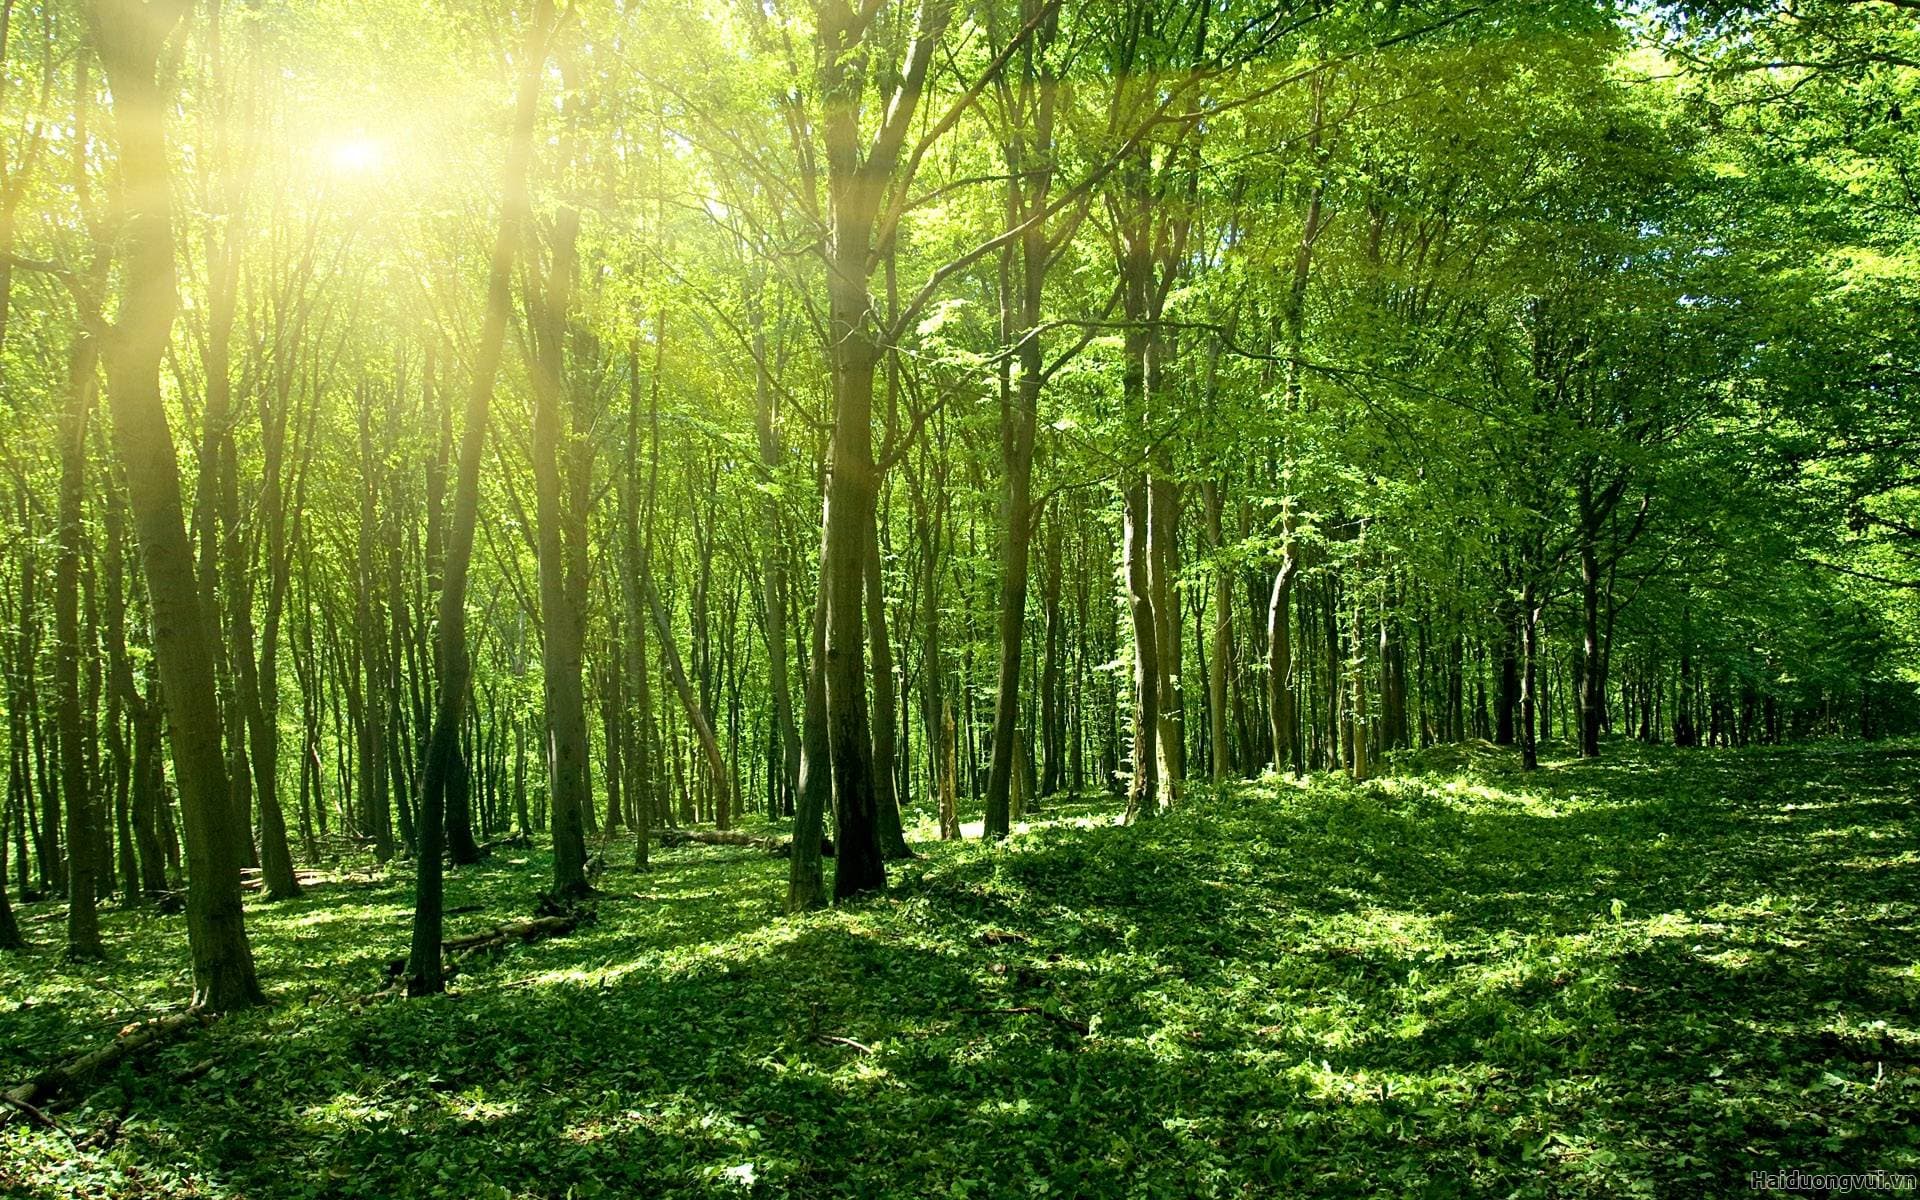 Đất rừng đặc dụng là gì Đất rừng đặc dụng có thể chuyển nhượng được hay không?